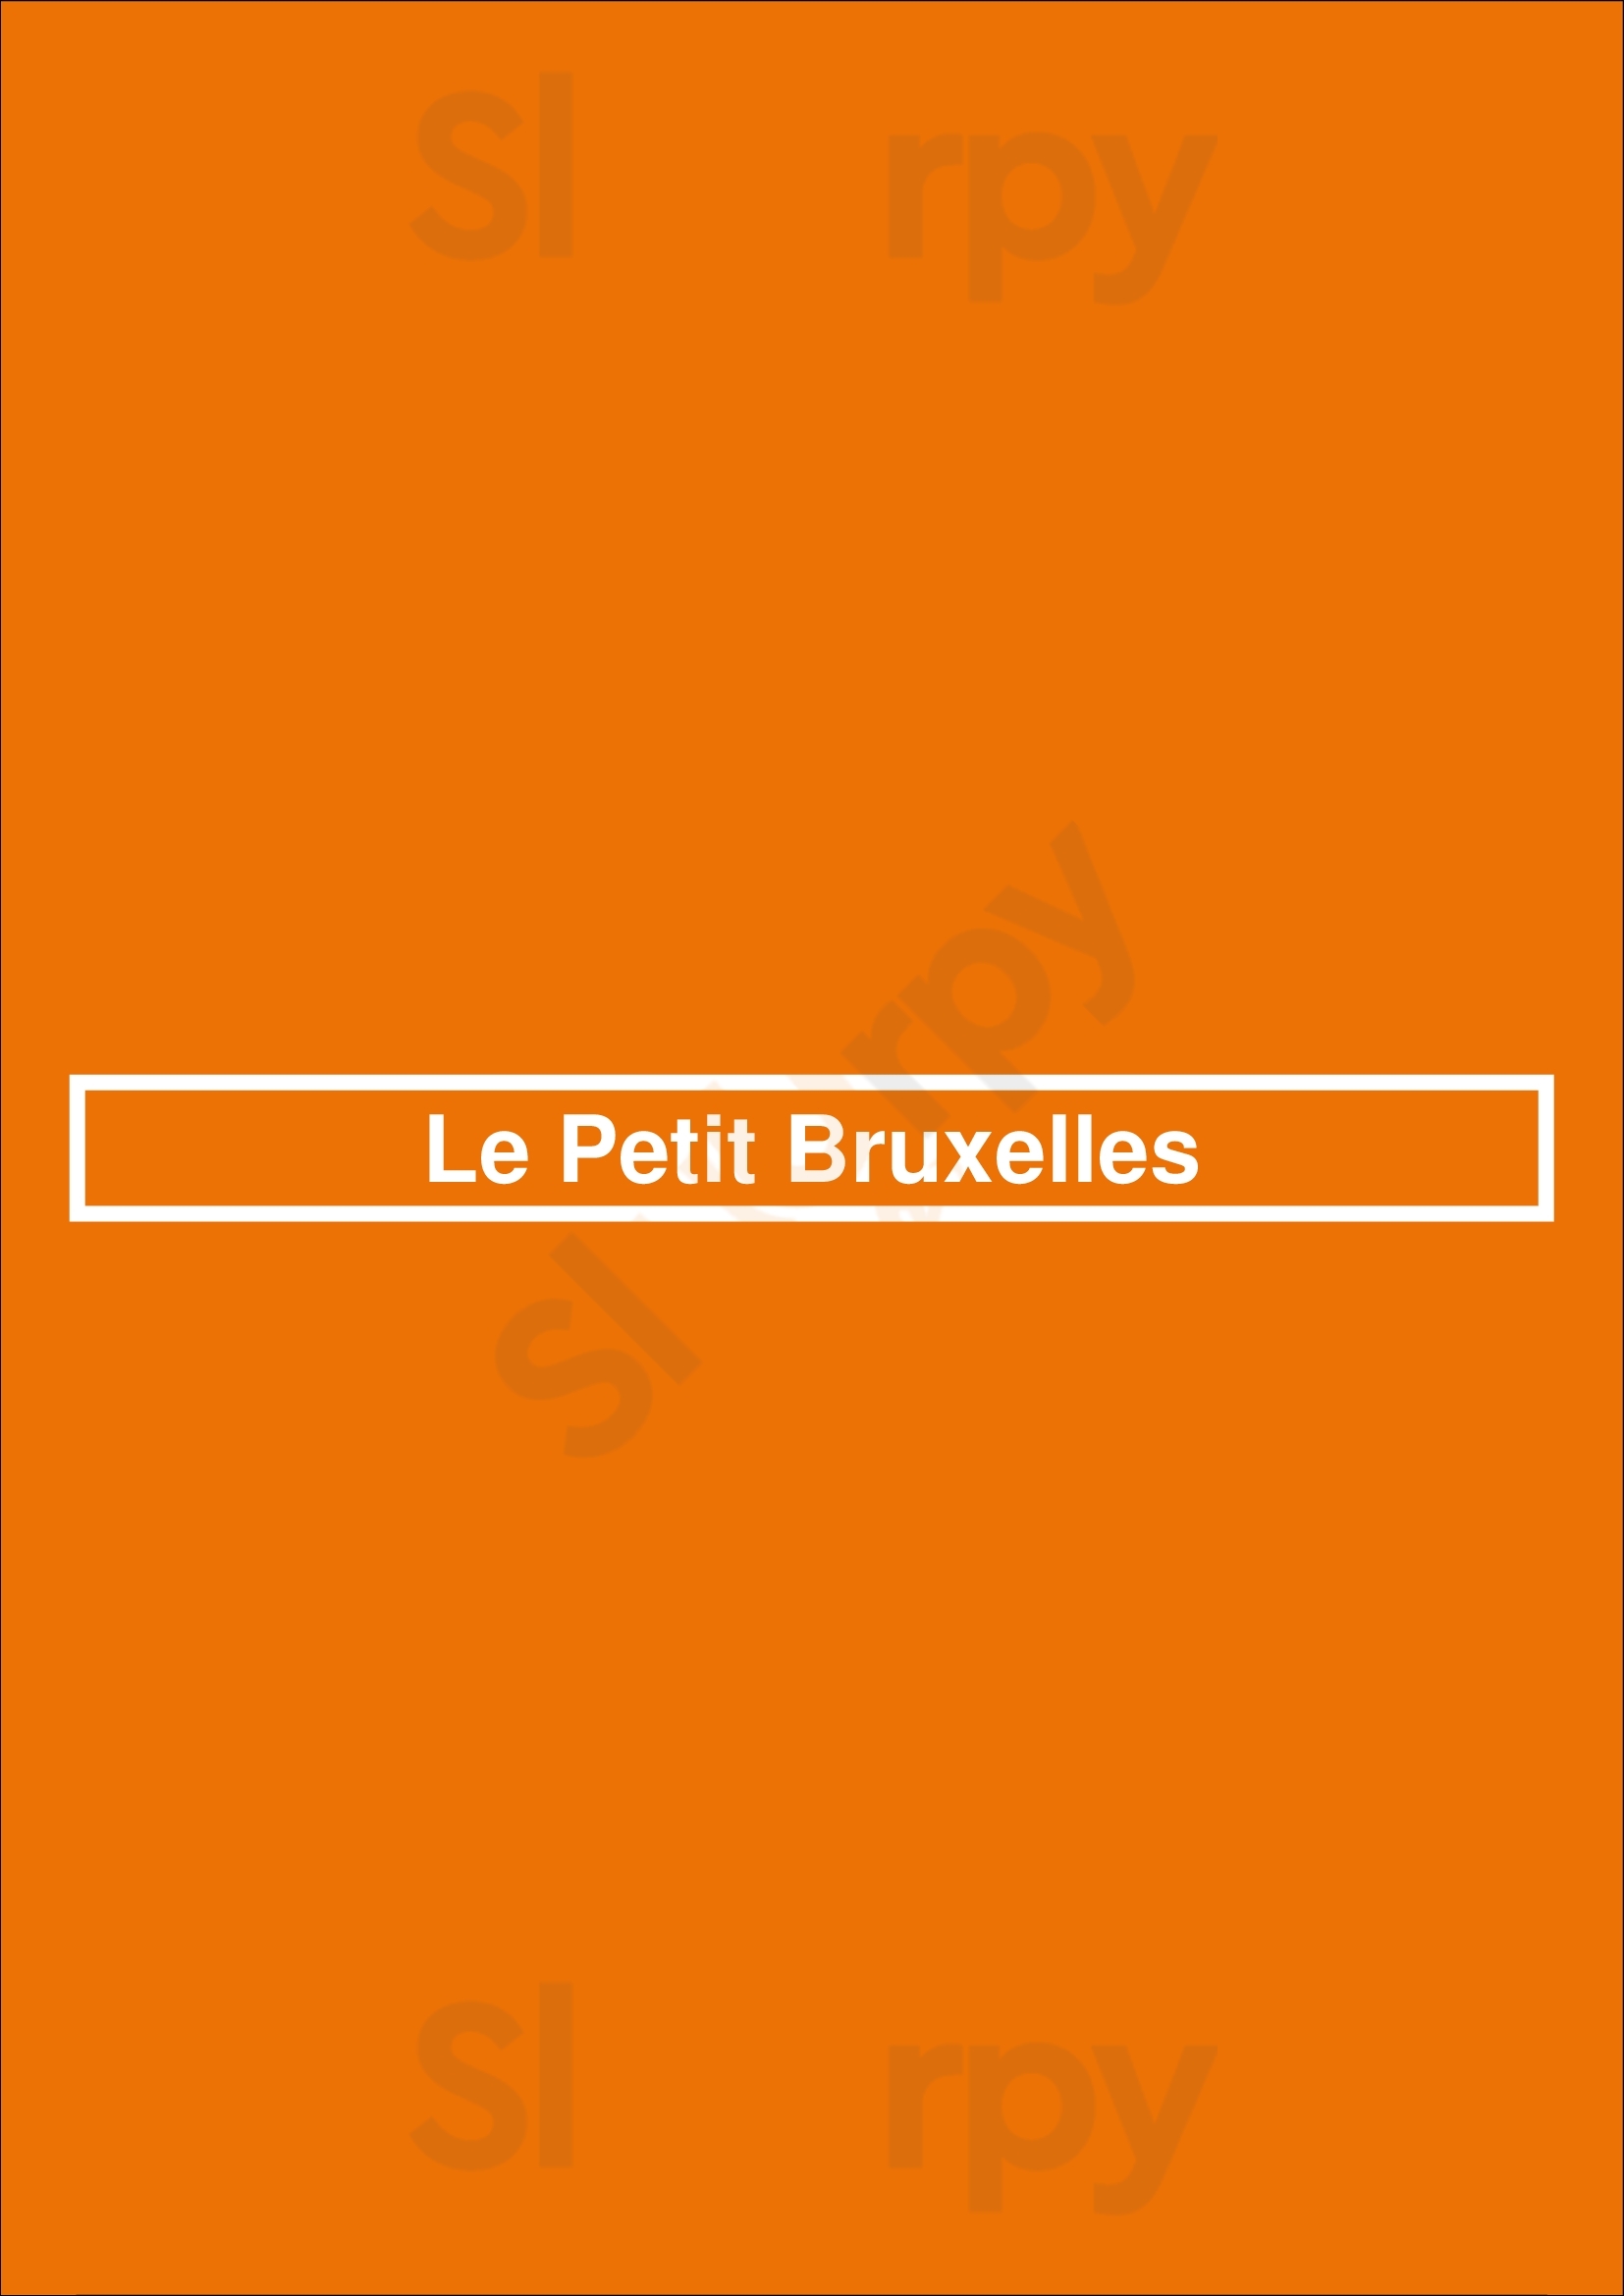 Le Petit Bruxelles Bruxelles Menu - 1